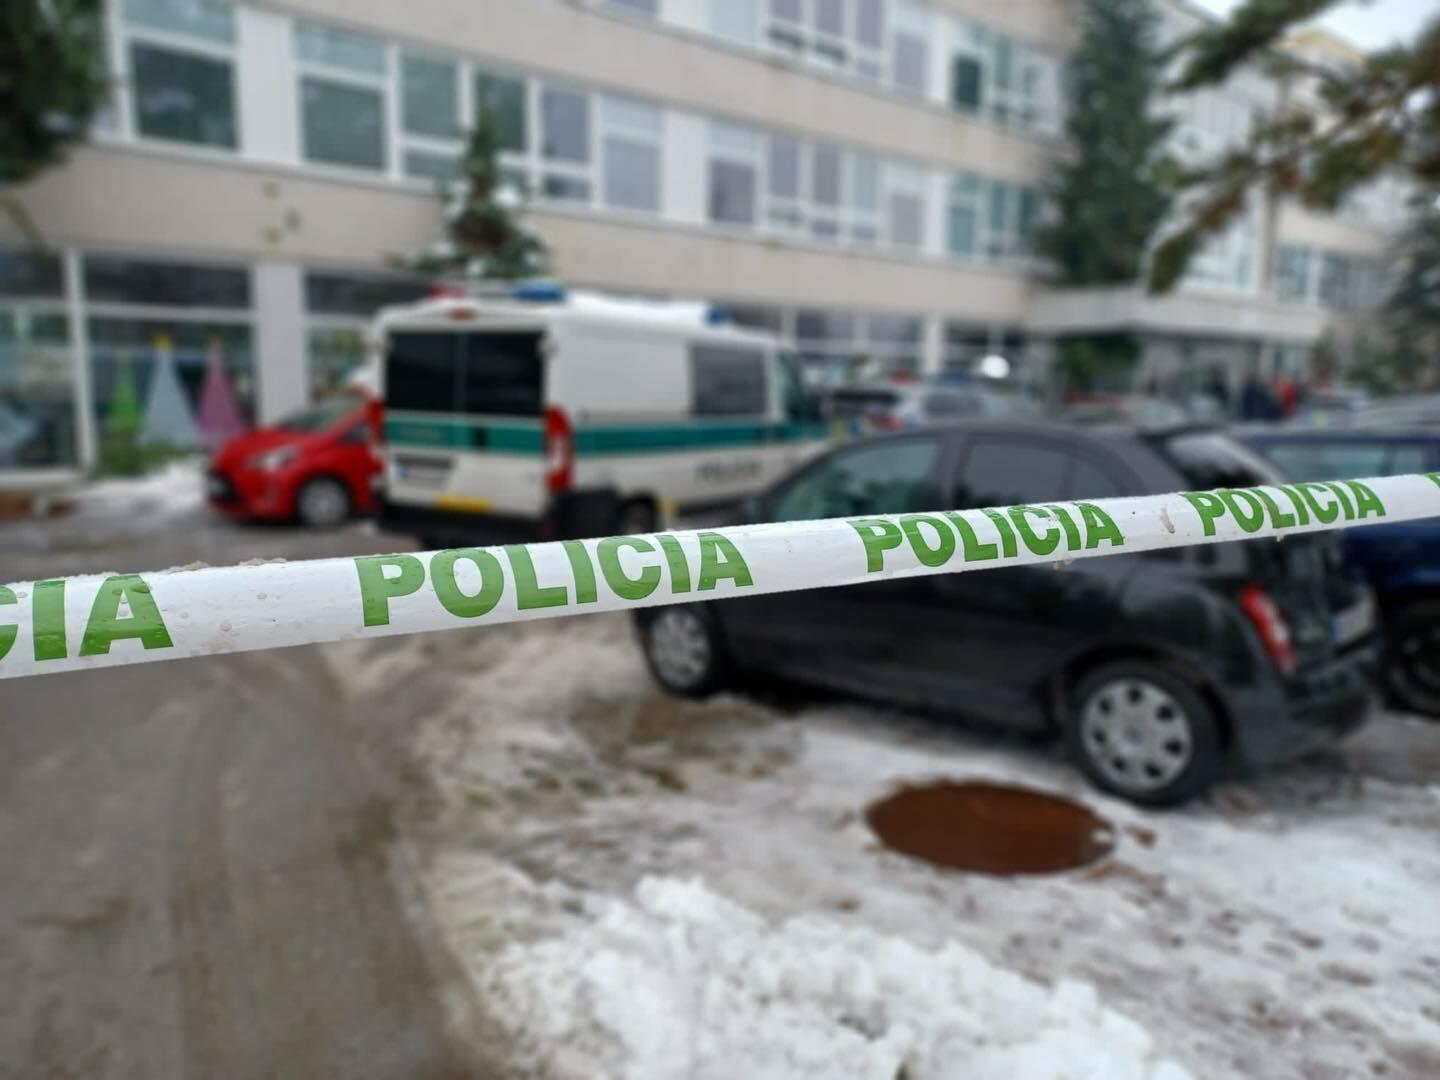 Žilinskí policajti zadržali muža, ktorý sa vyhrážal, že zopakuje útok z Prahy